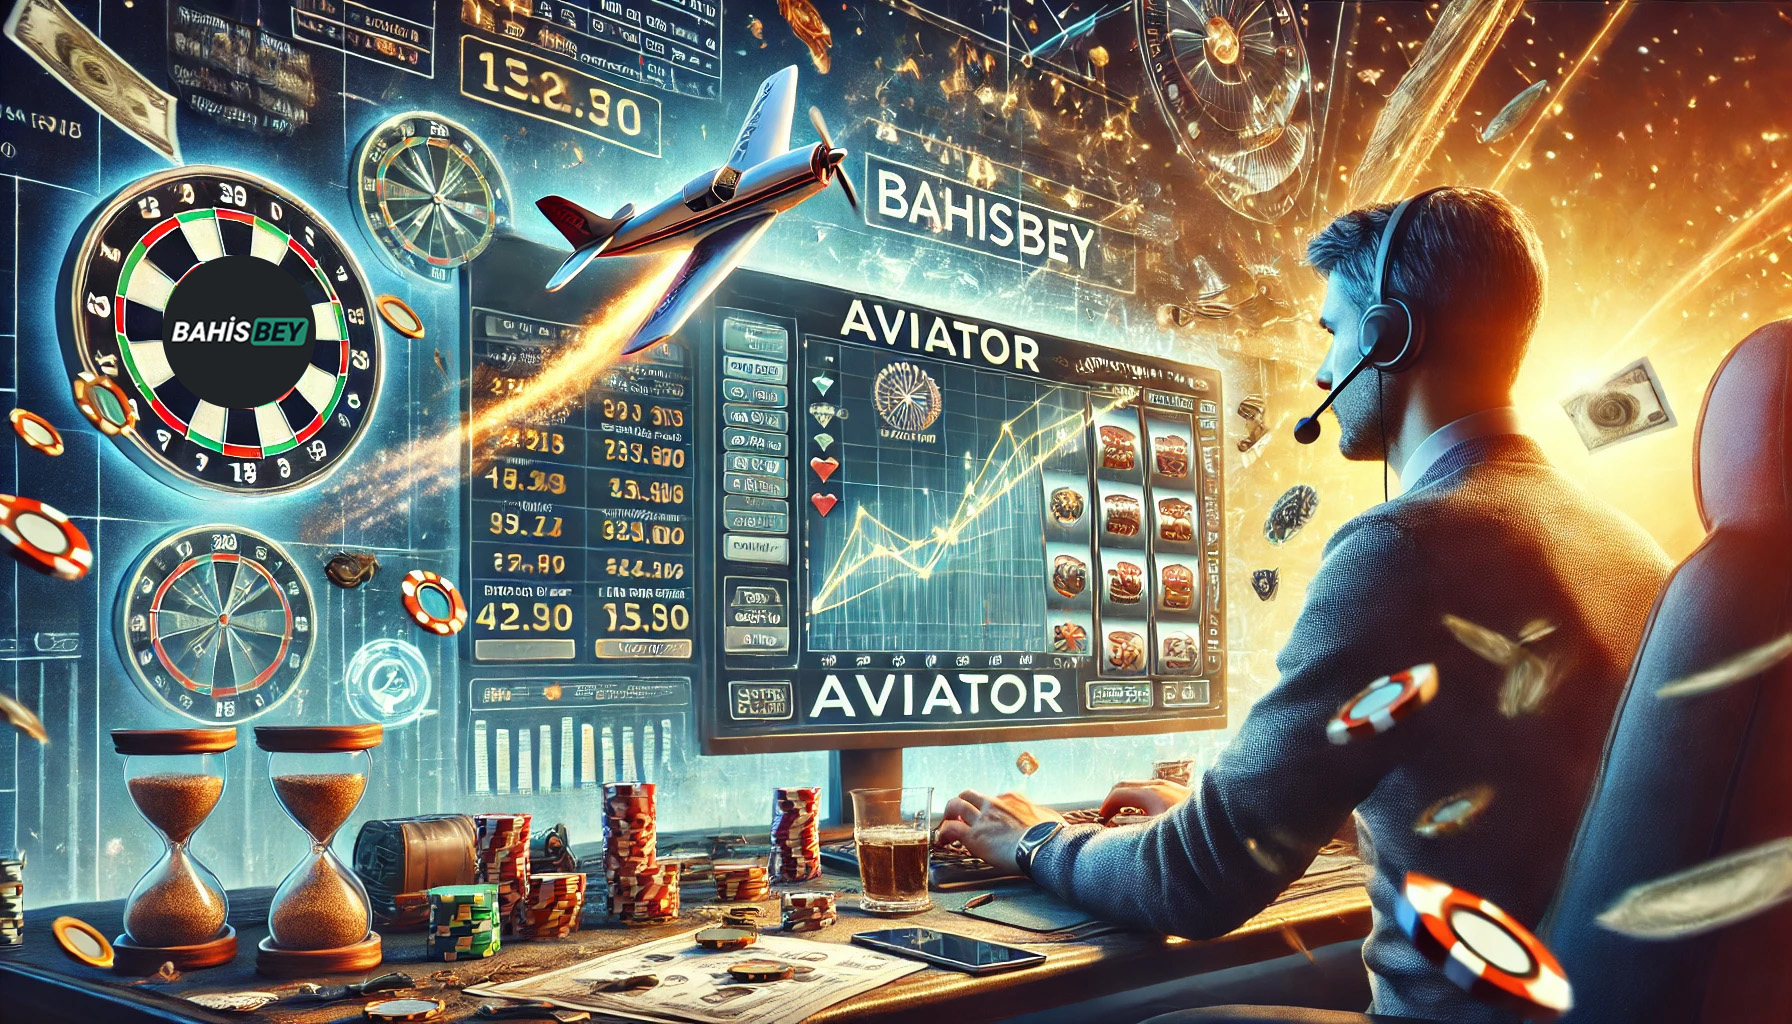 Bahisbey Aviator Oyunu İncelemesi: Heyecan ve Kazanç Dolu Uçuş